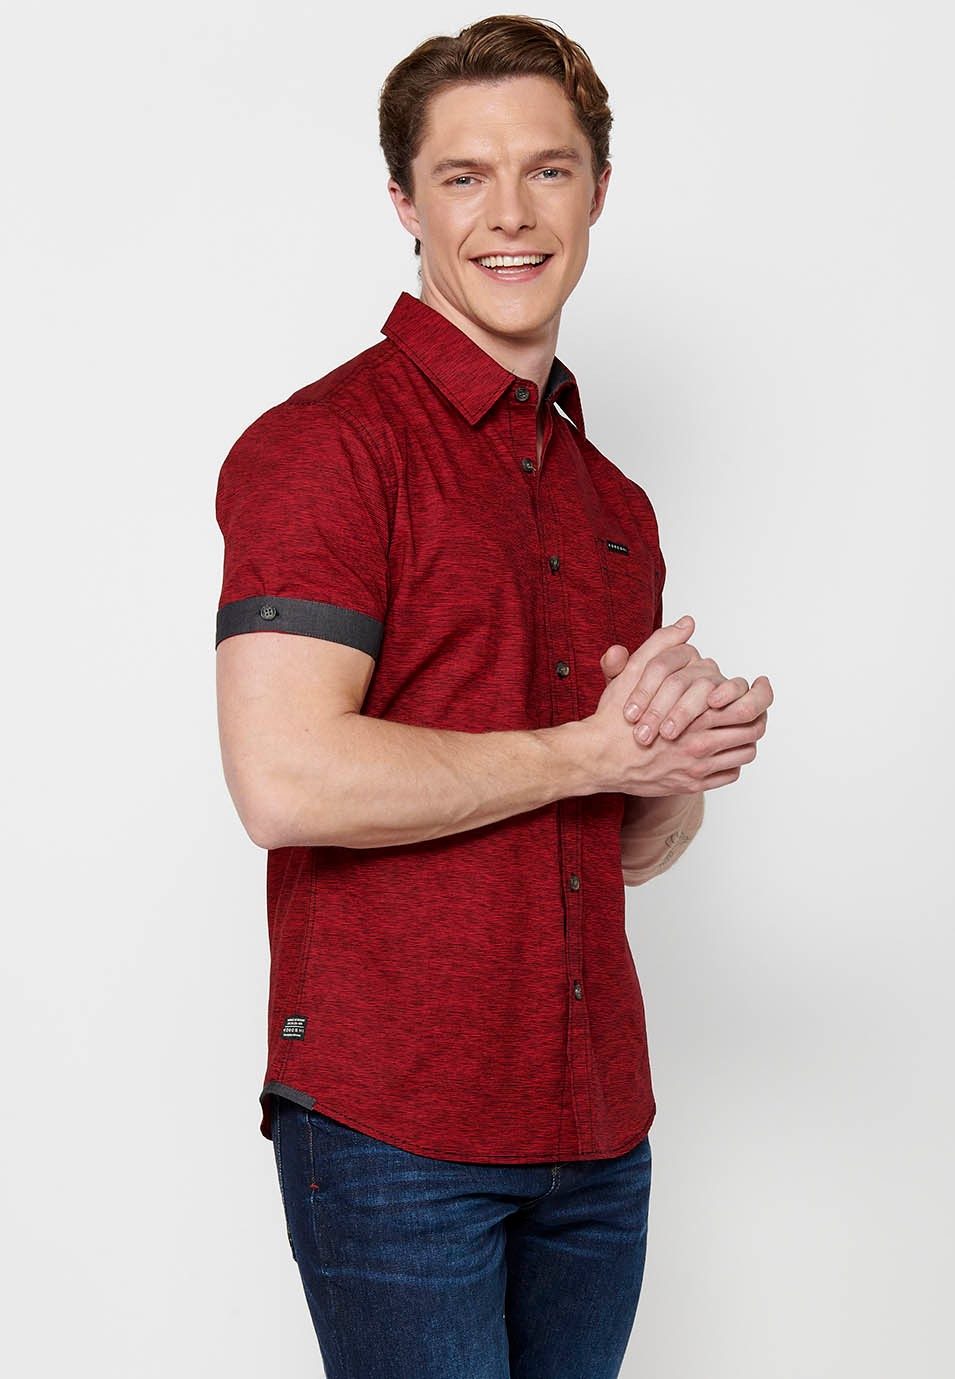 Camisa manga corta de algodón, color rojo para hombres